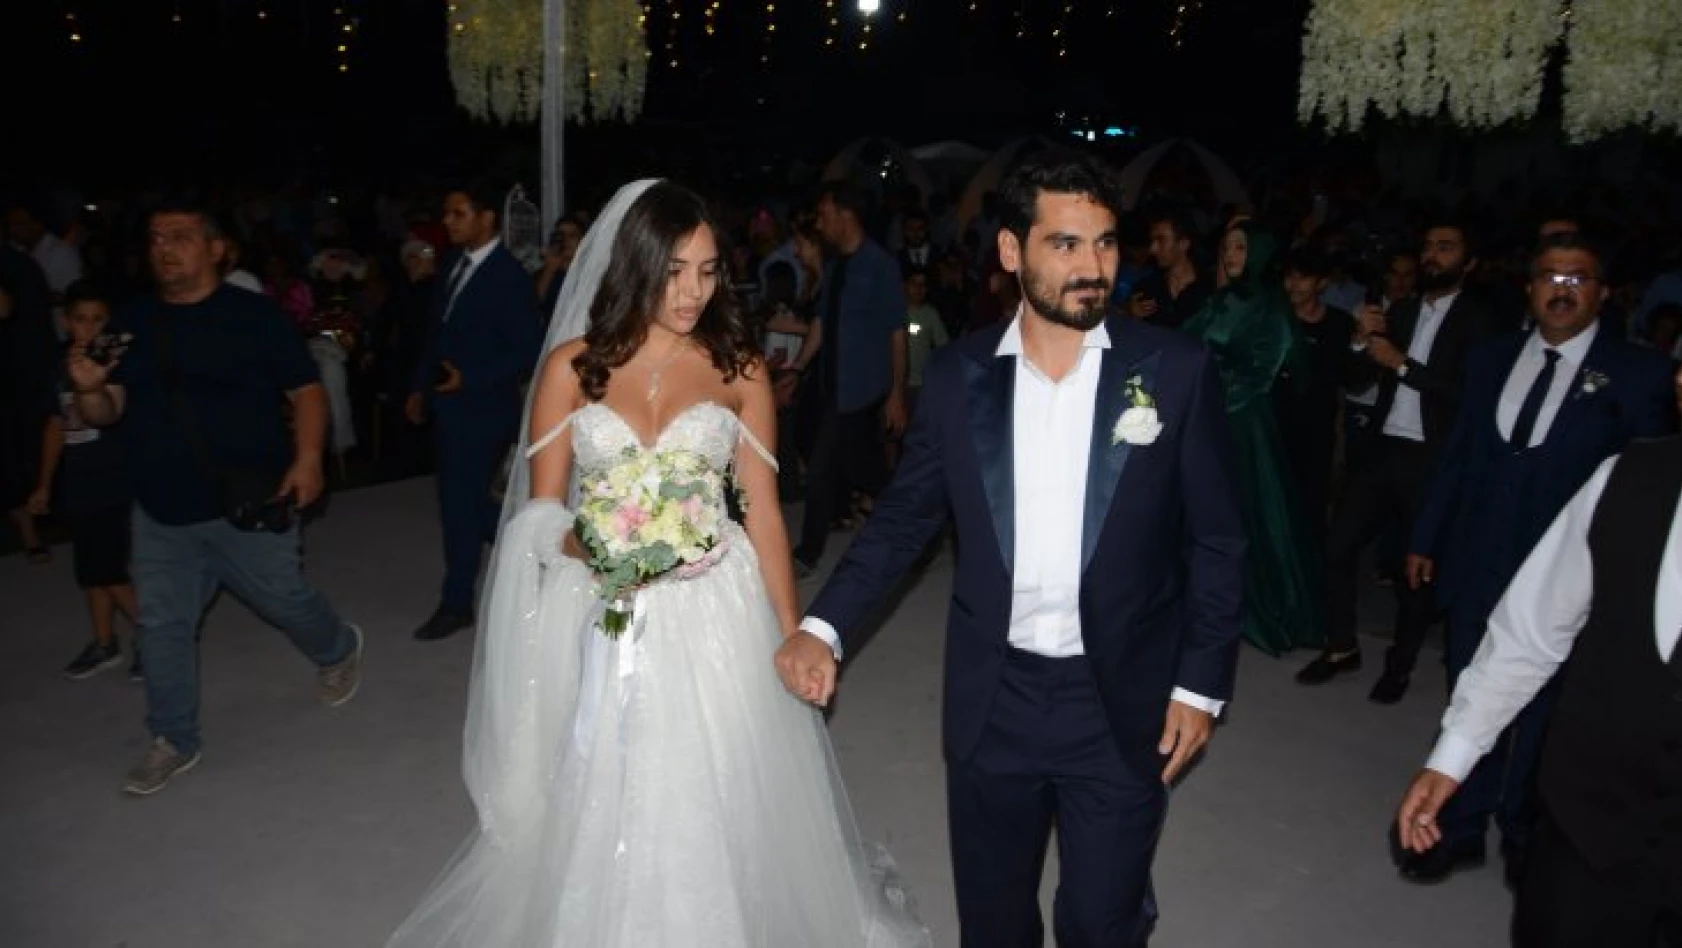 Manchester City'nin yıldızı İlkay Gündoğan, model Sara Arfaoui ile evlendi